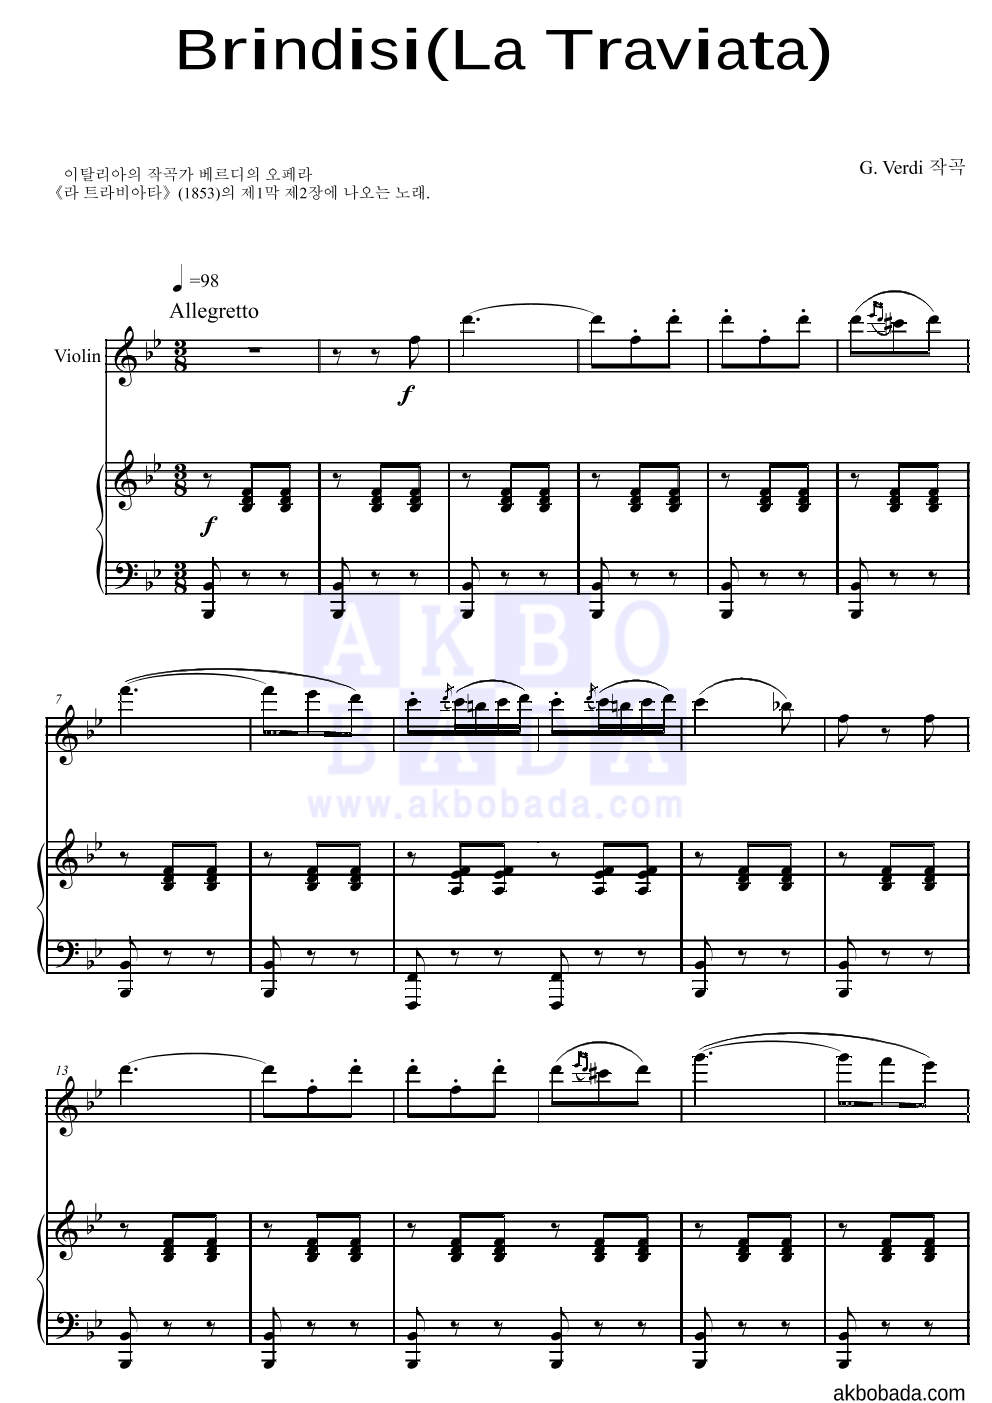 베르디 - Brindisi(La Traviata)축배의 노래 바이올린&피아노 악보 